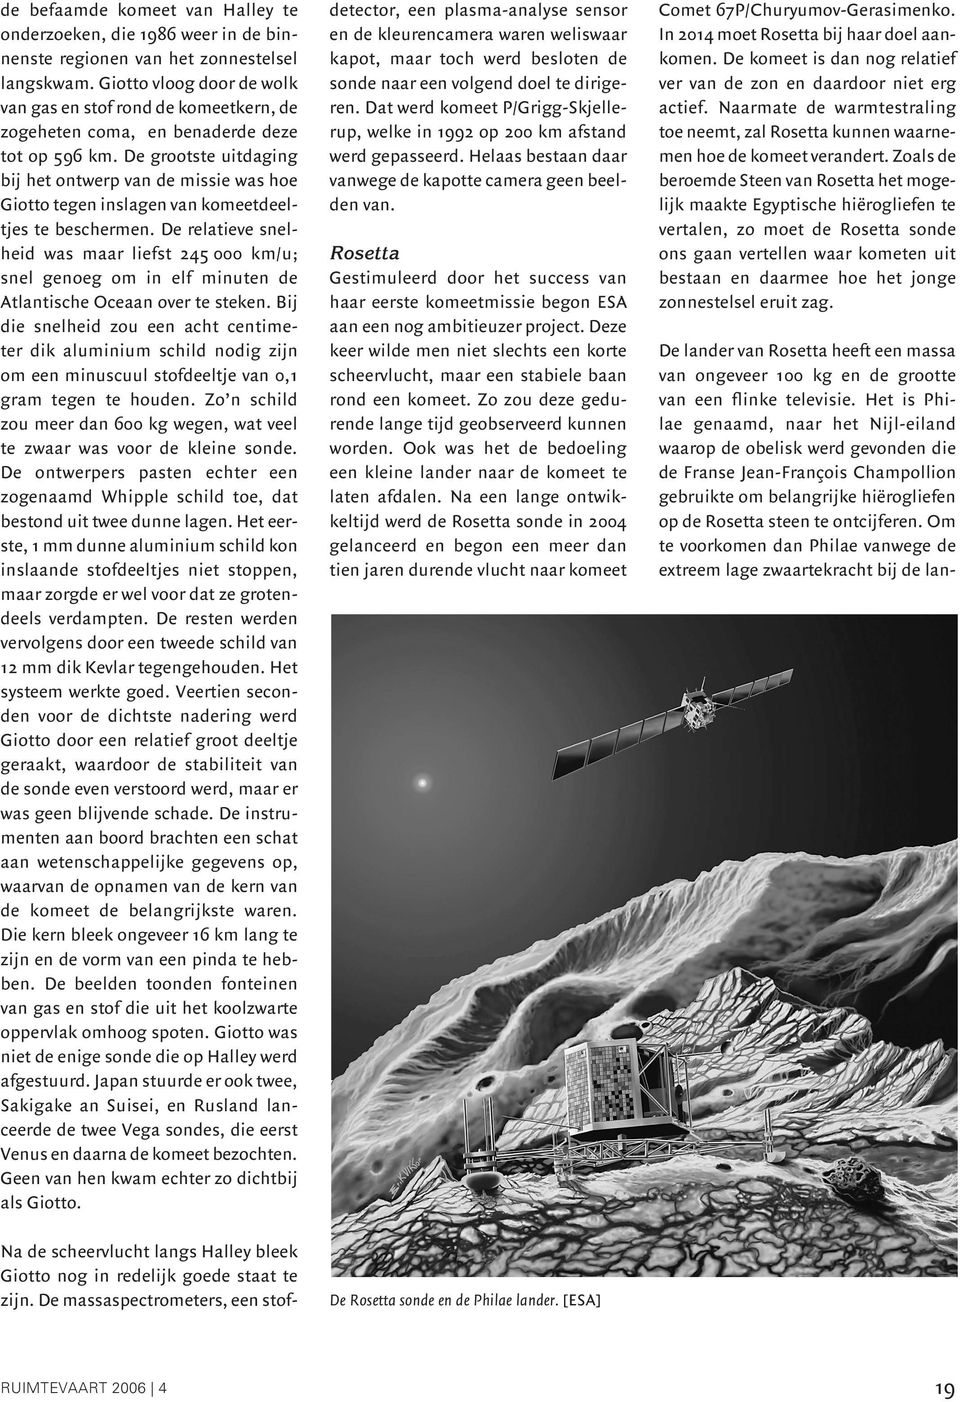 De grootste uitdaging bij het ontwerp van de missie was hoe Giotto tegen inslagen van komeetdeeltjes te beschermen.